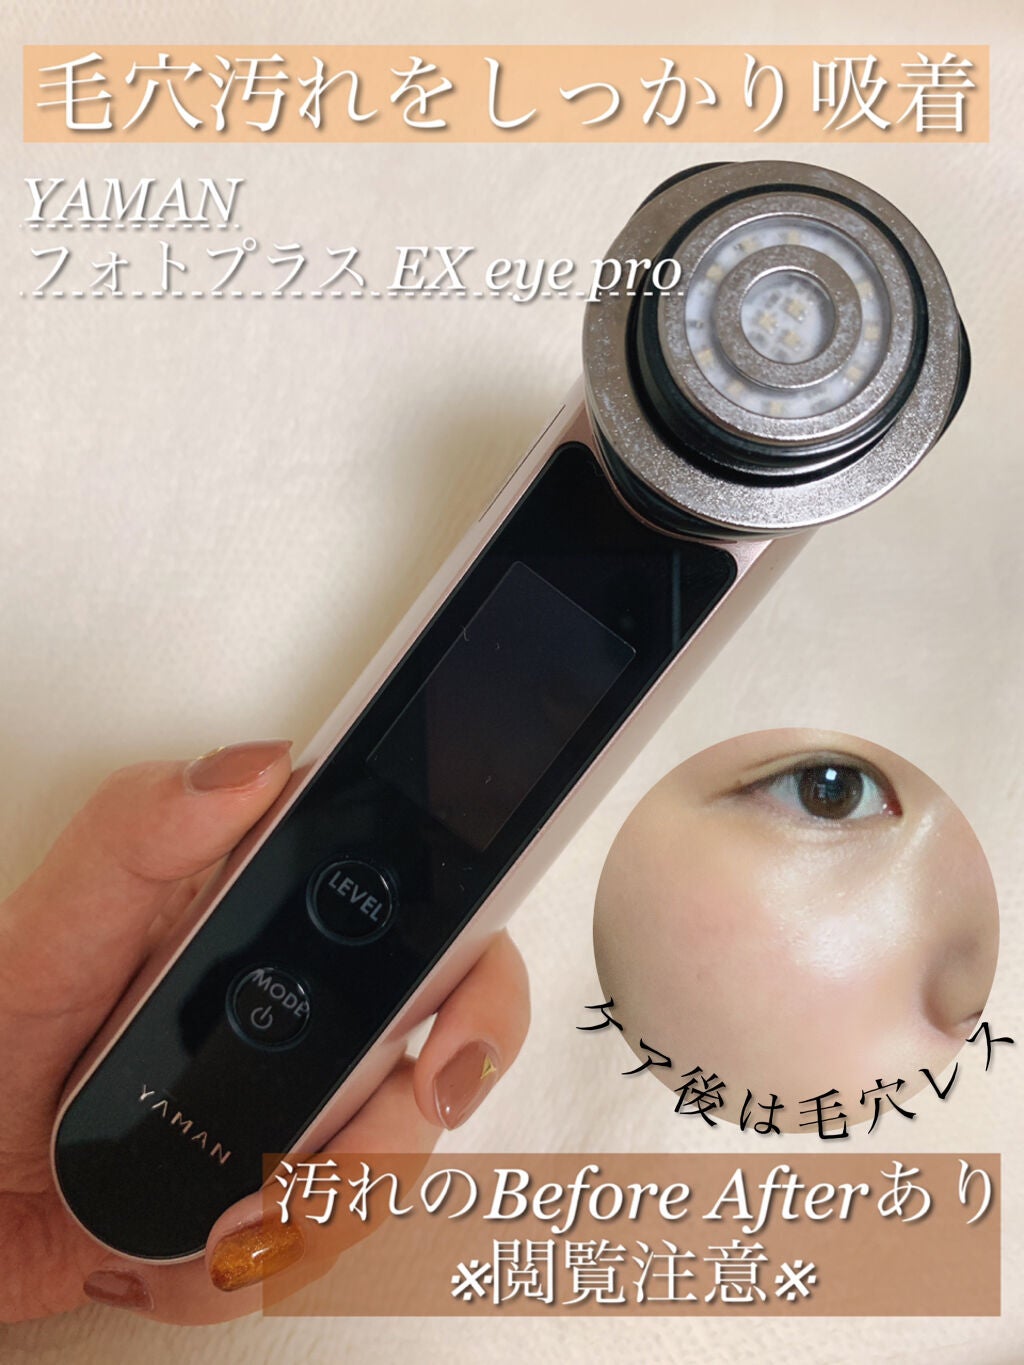 【高級機種】⑦HRF-20-EYE フォトプラスEX eye pro ヤーマン